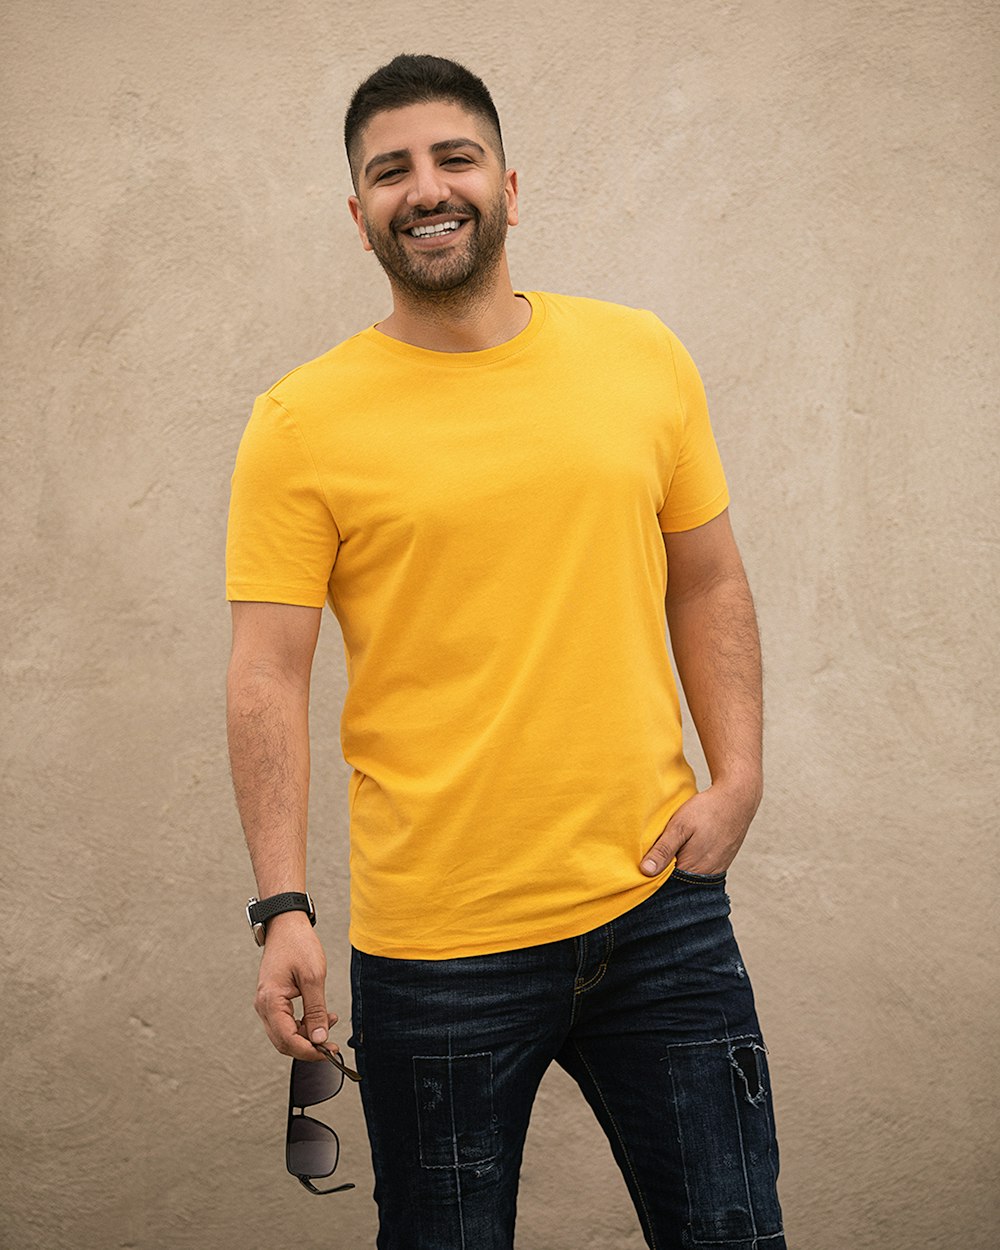 Homme en t-shirt à col rond jaune et jean en denim noir debout à côté d’un mur blanc